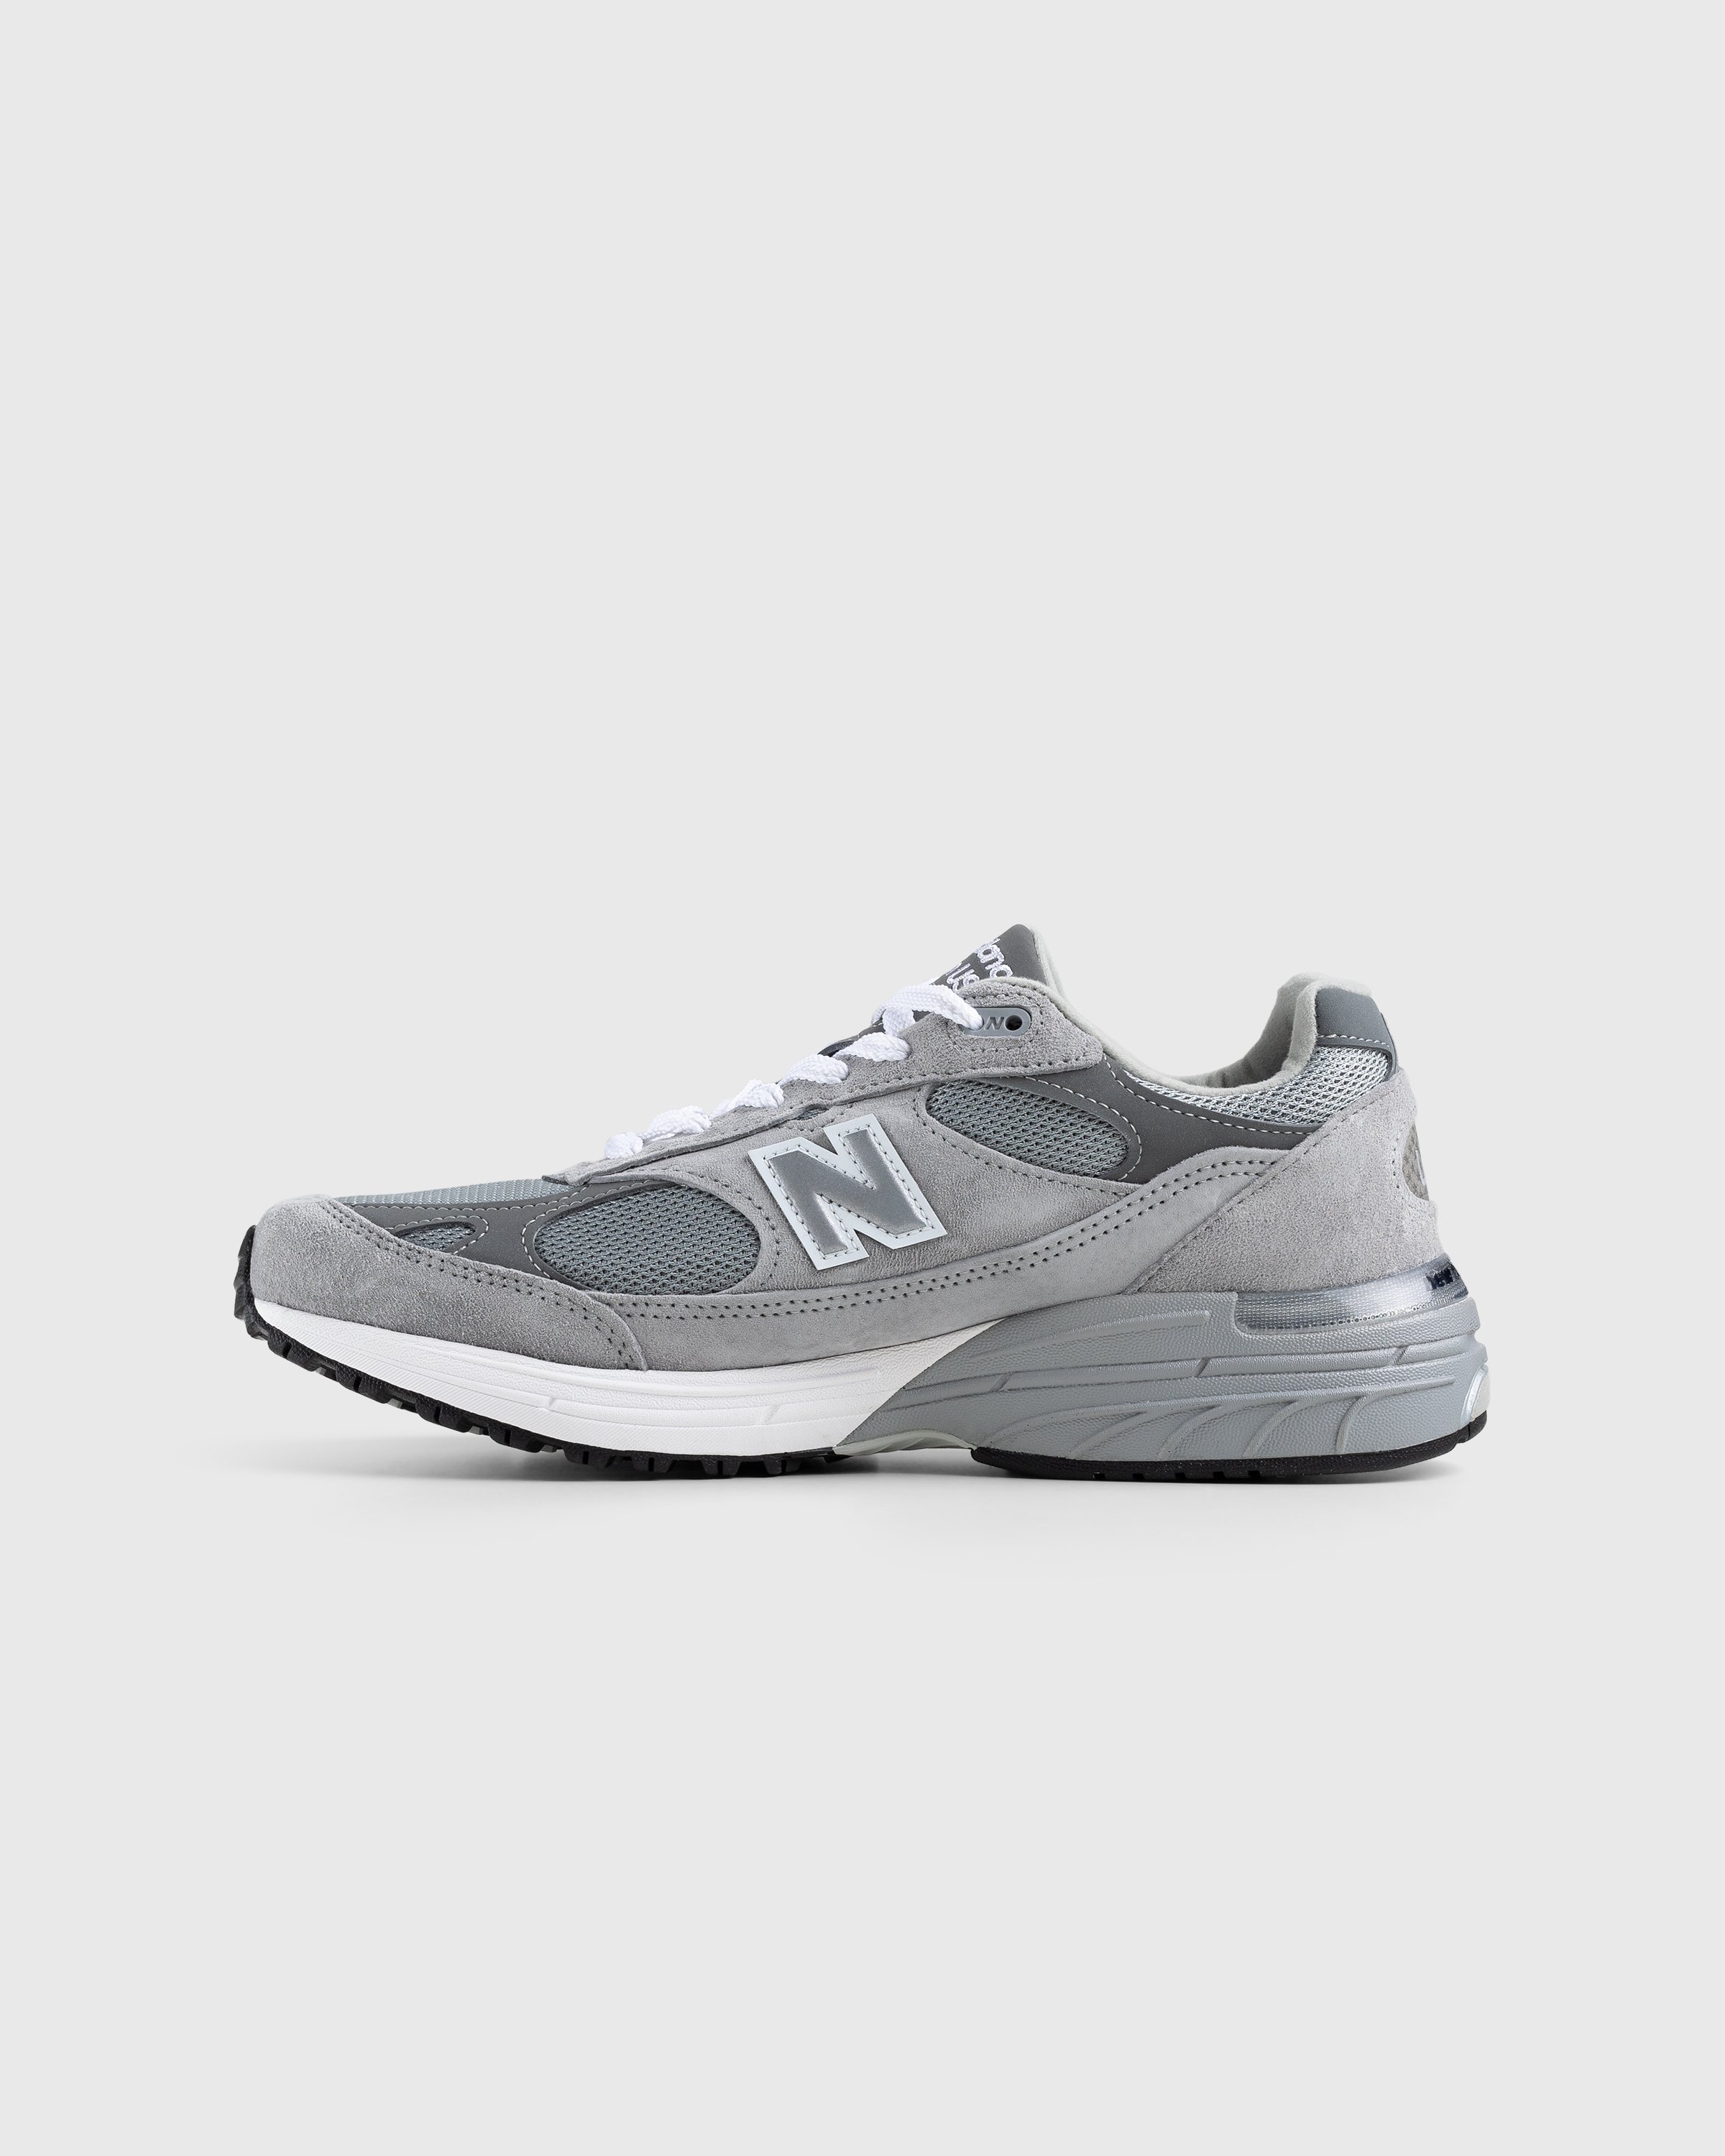 New Balance - MR993GL Grey - Footwear - Grey - Image 2